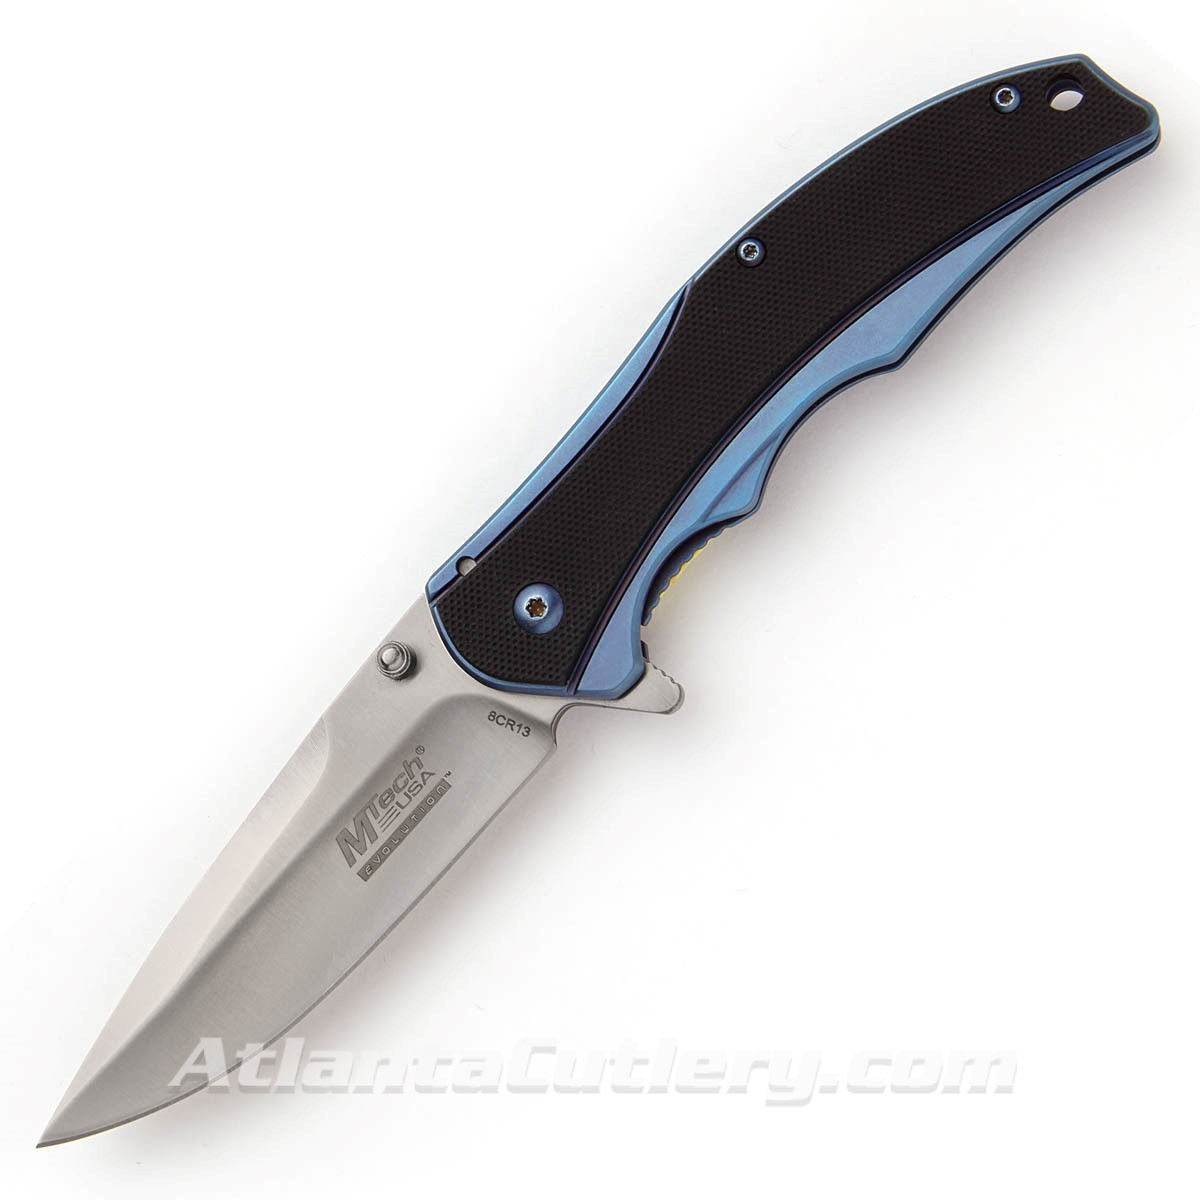 Blue Wave Pocket Knife by Mtech